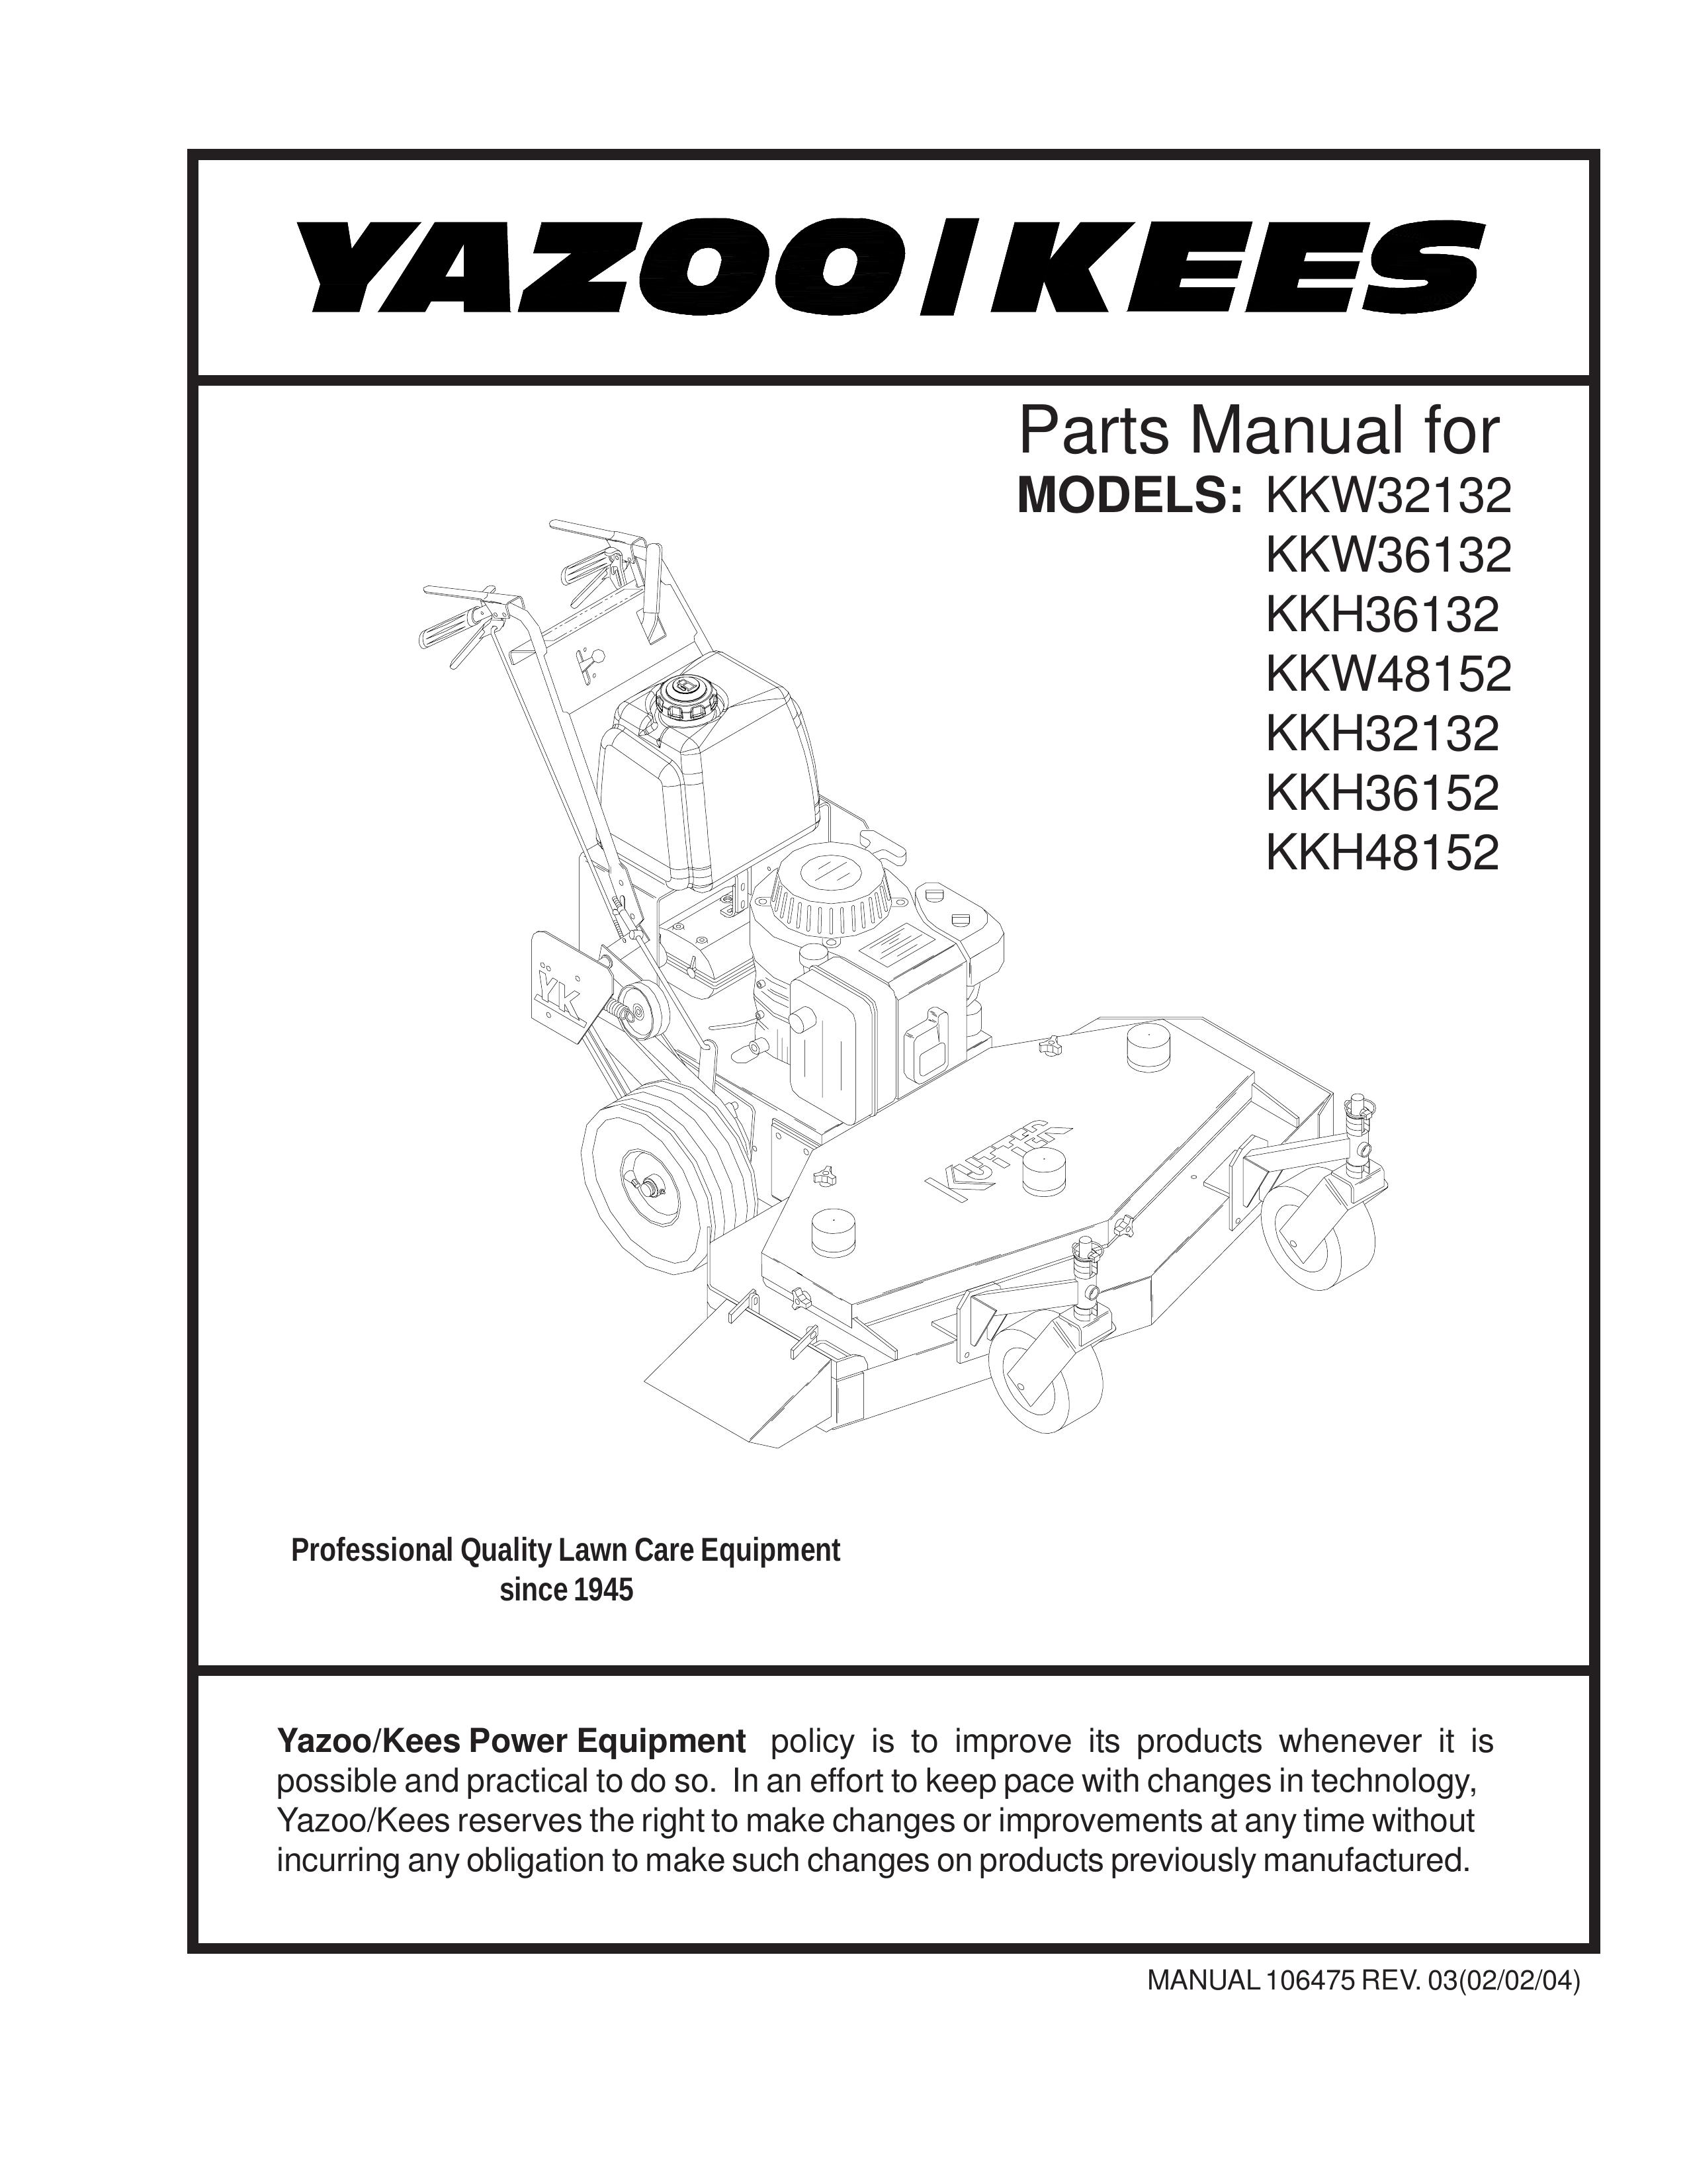 Yazoo/Kees KKH36132 Lawn Mower User Manual